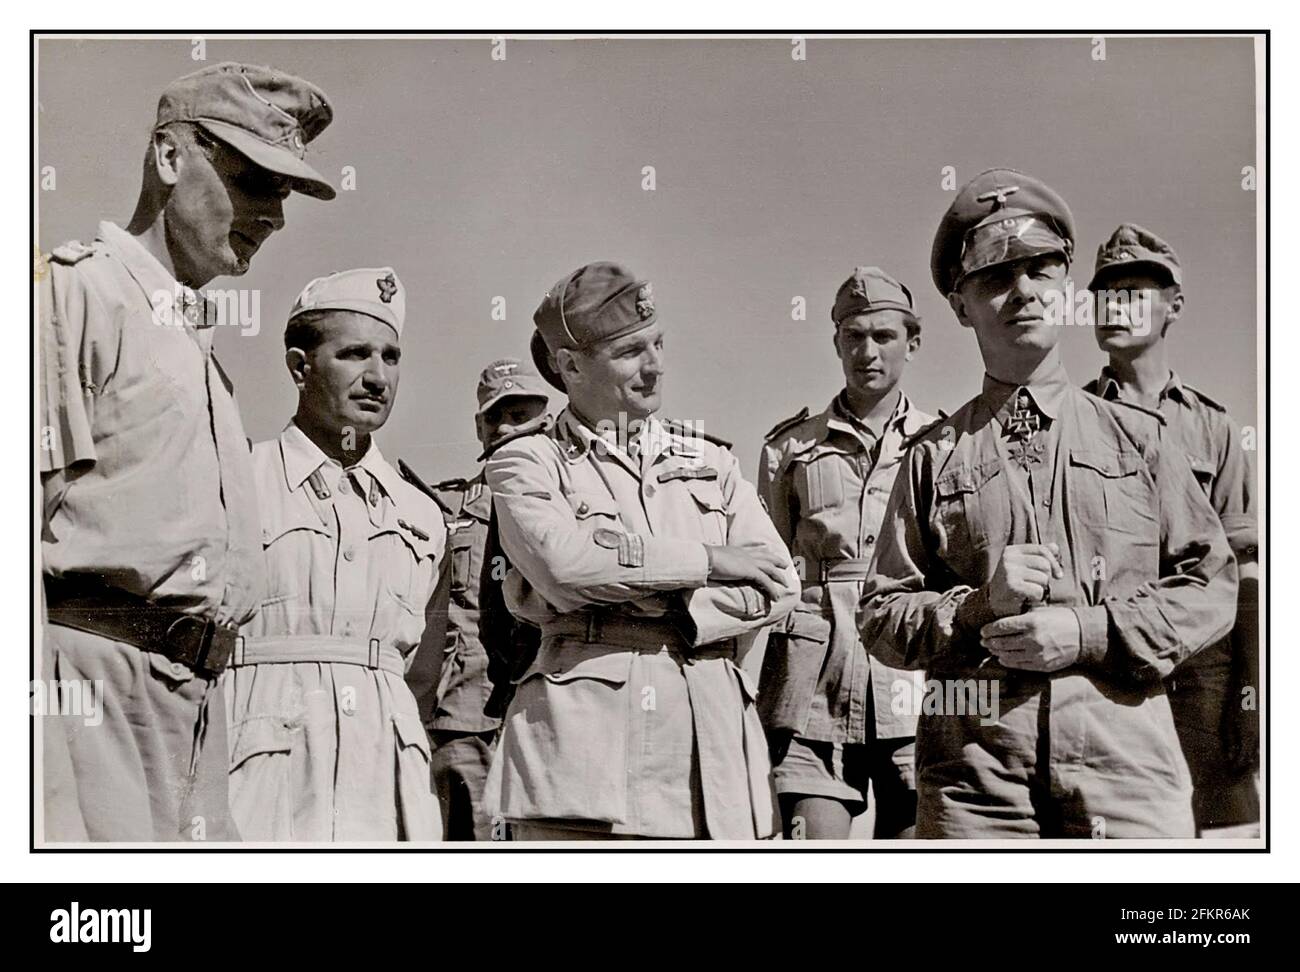 2. Weltkrieg ROMMEL AFRIkaCORPS OFFIZIERSGRUPPE General Johannes Erwin Eugen Rommel (15. November 1891 – 14. Oktober 1944) war ein nationaldeutscher General und Militärtheoretiker. General Rommel, bekannt als Wüstenfuchs, war ein angesehener Kommandant des Afrikakorps-1941 - Generalleutnant Erwin Rommel (Kommandierender General Deutsche Afrikakorps) in Tripolis (Libyen), als er 1941 nach Nordafrika kam. Zweiter Weltkrieg Stockfoto